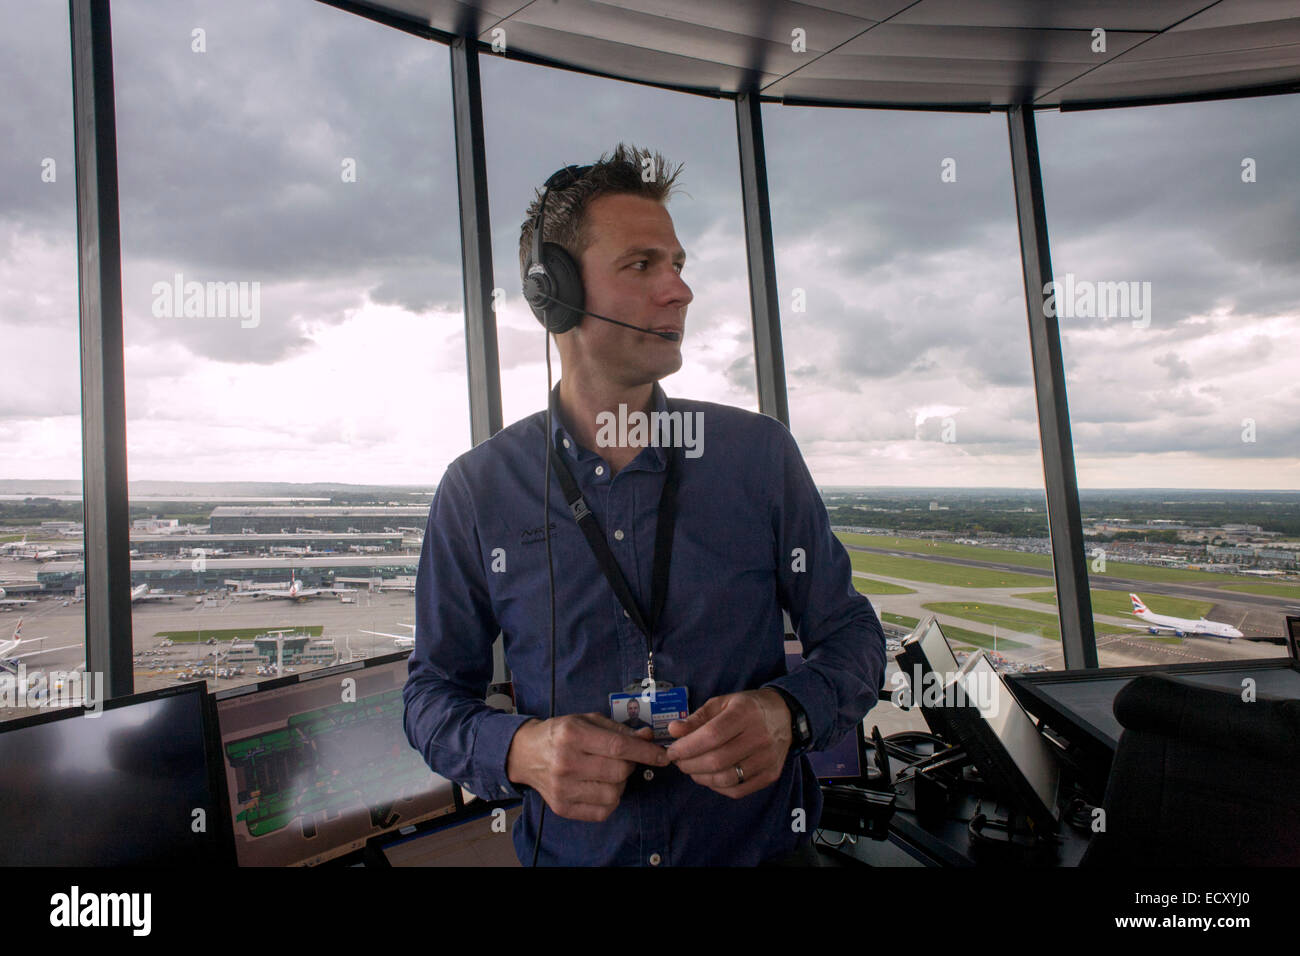 Contrôleur aérien Heathrow NATS en tour de contrôle à l'aéroport de Heathrow, Londres. Banque D'Images